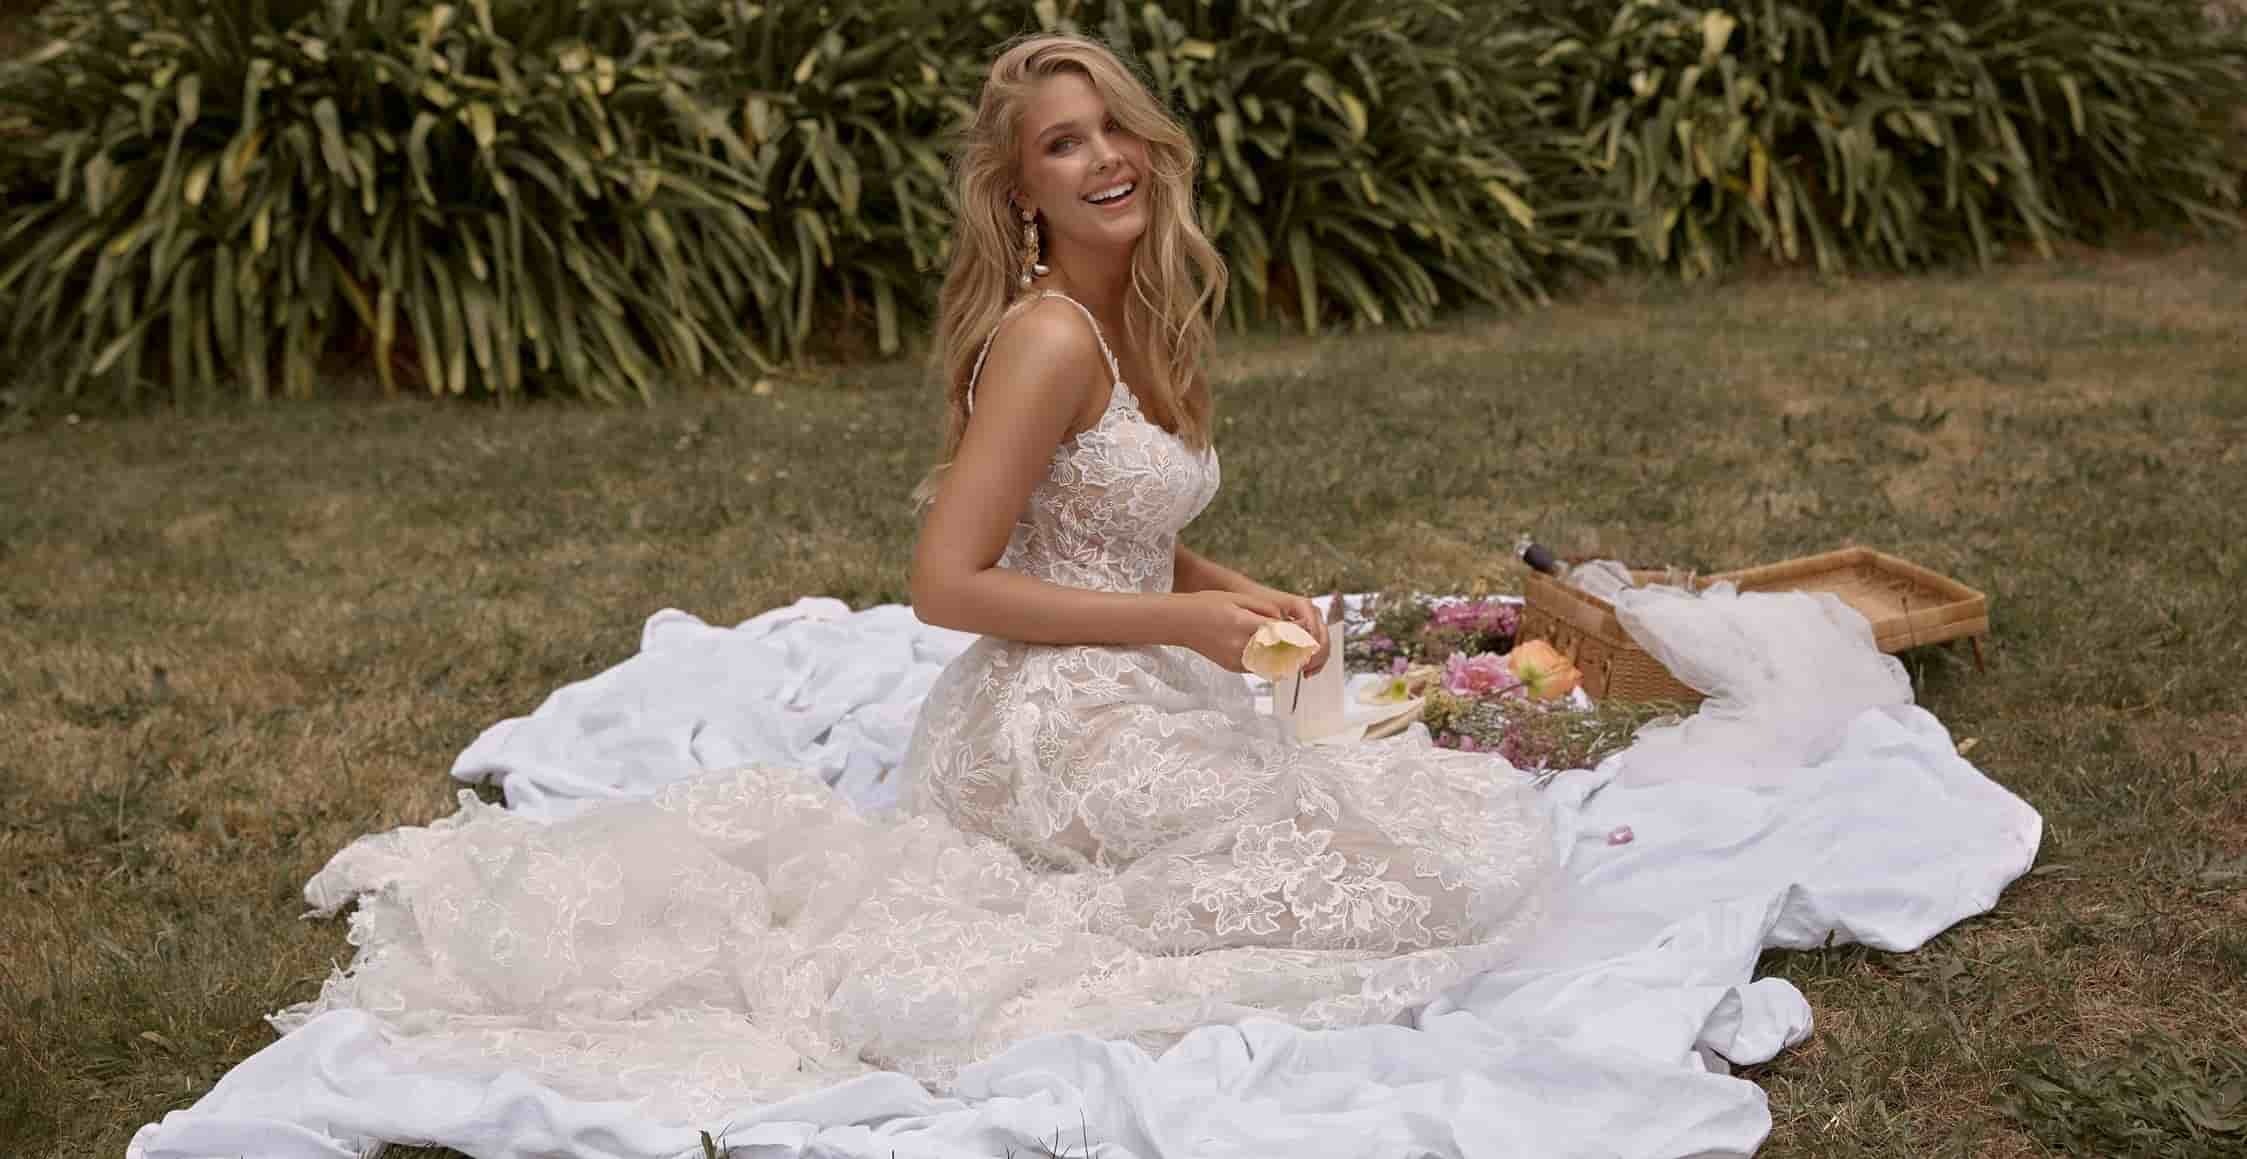 Visit Introducing Madi Lane Bridal details page